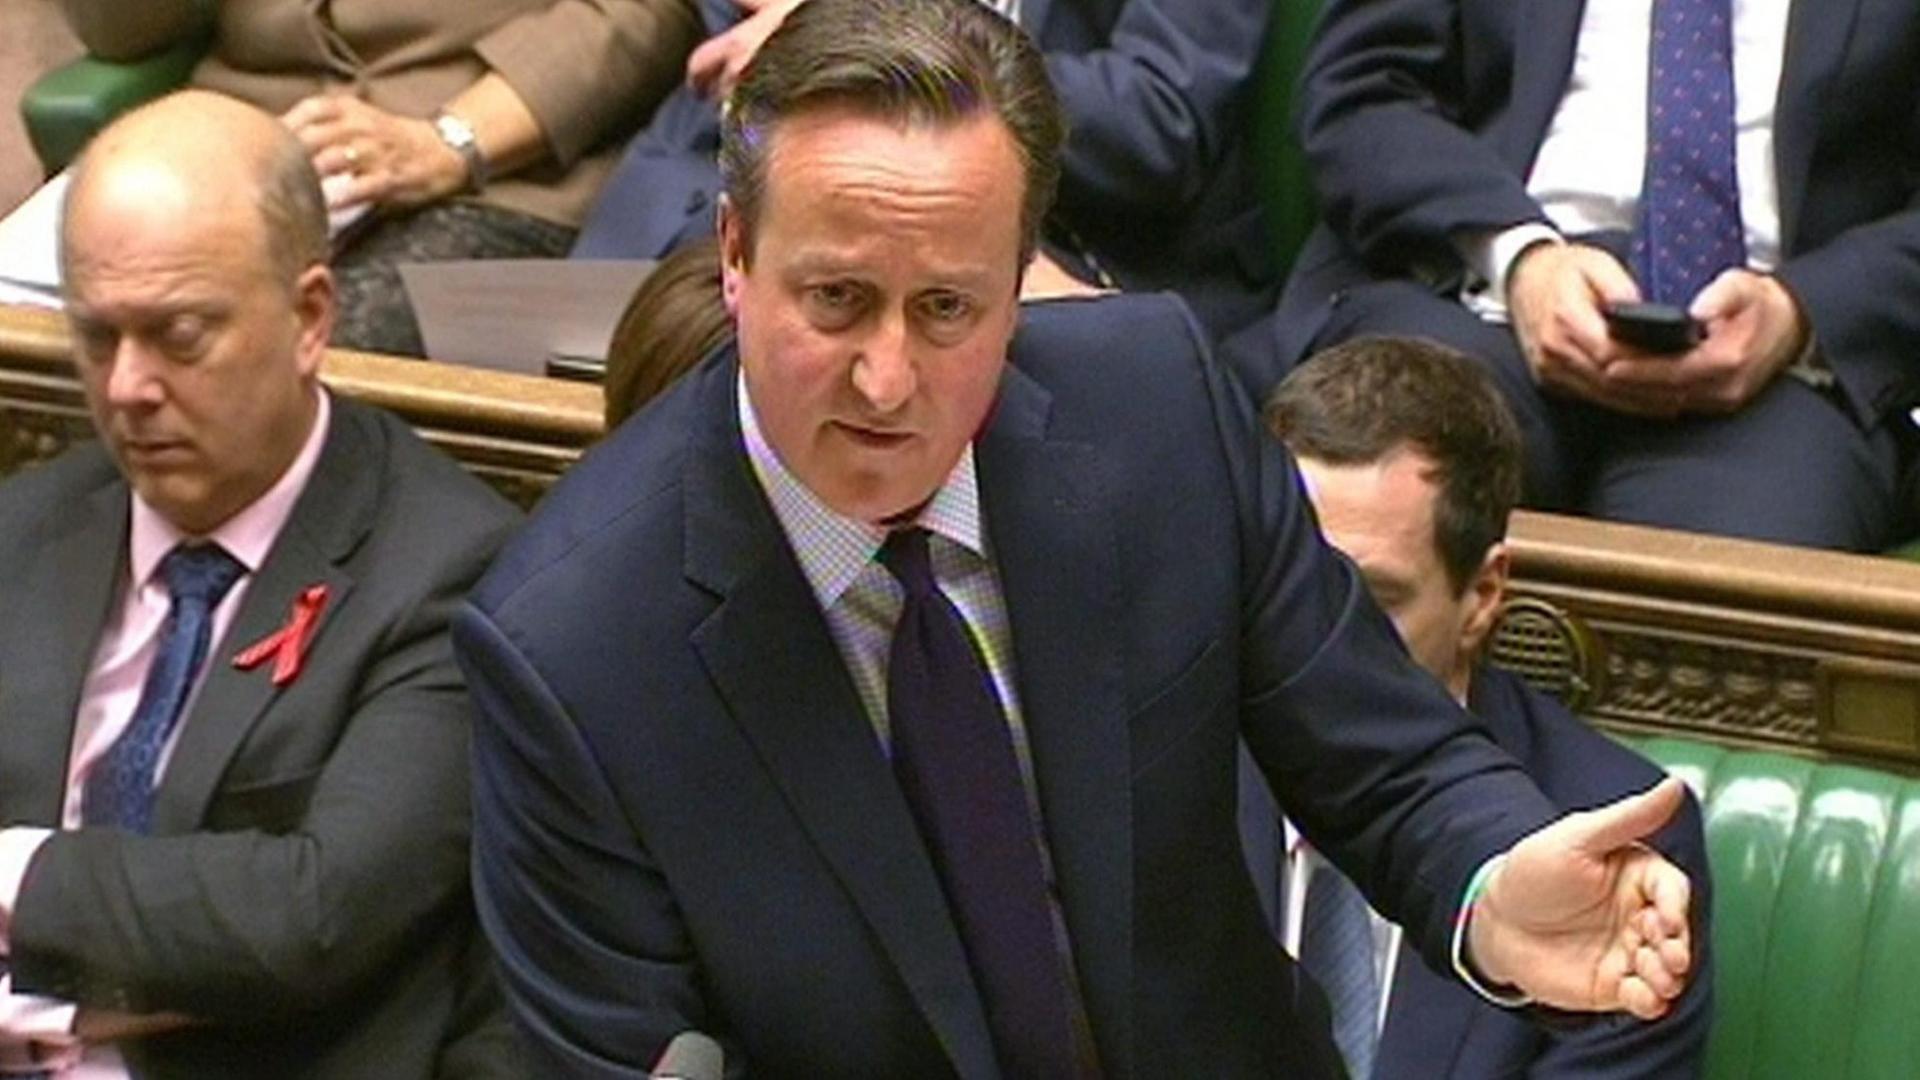 Zu sehen ist der britische Premierminister David Cameron. Er hält eine Rede im Parlament, dem Unterhaus.